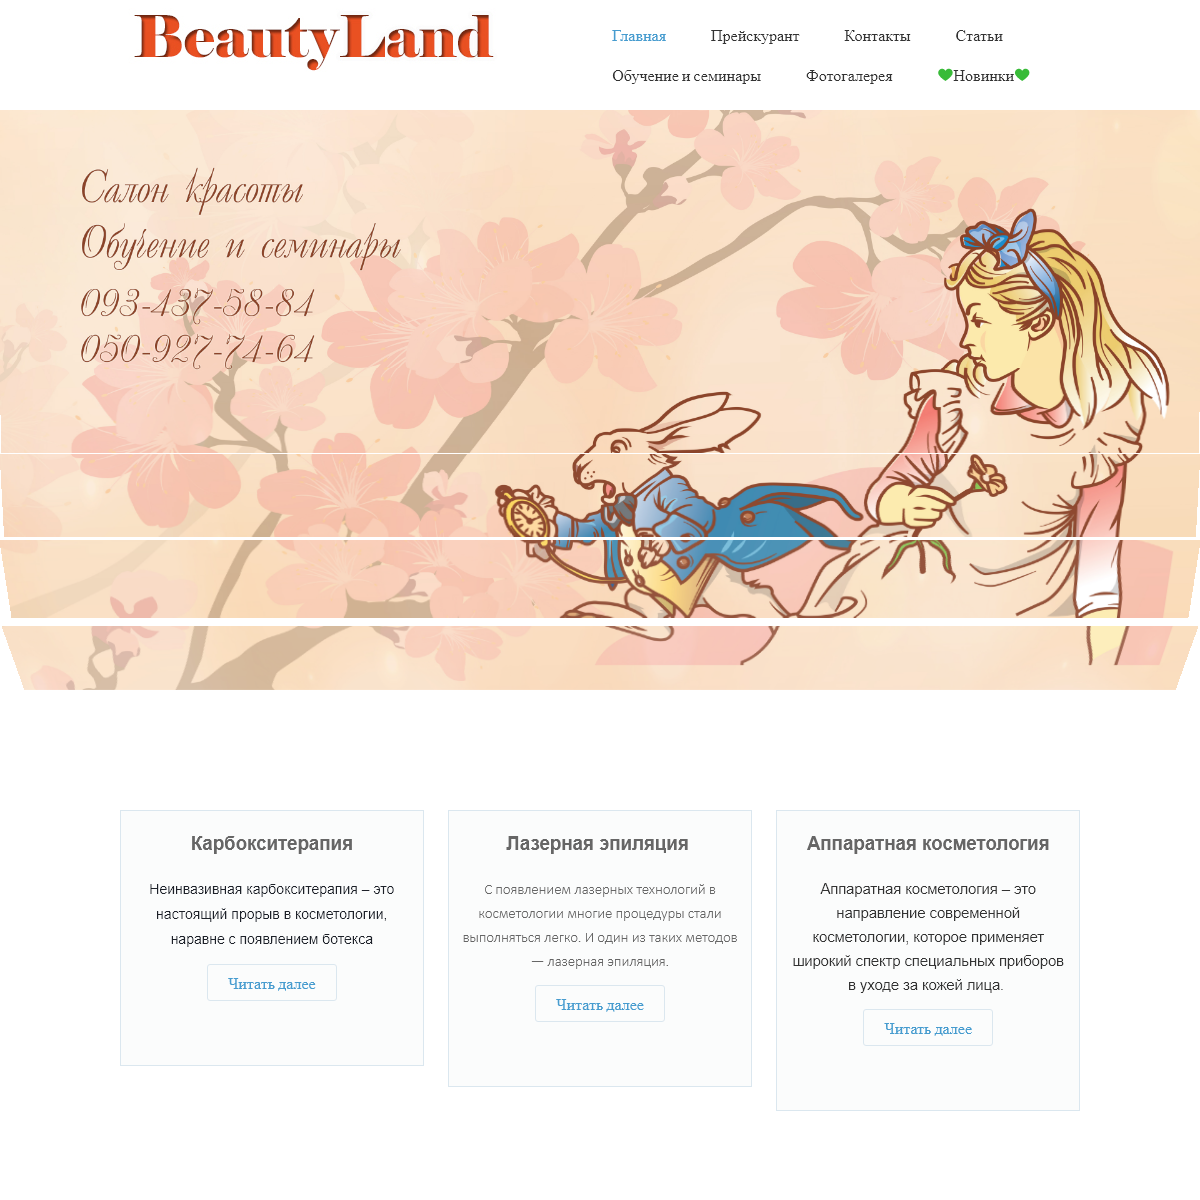 A complete backup of beauty-land.com.ua